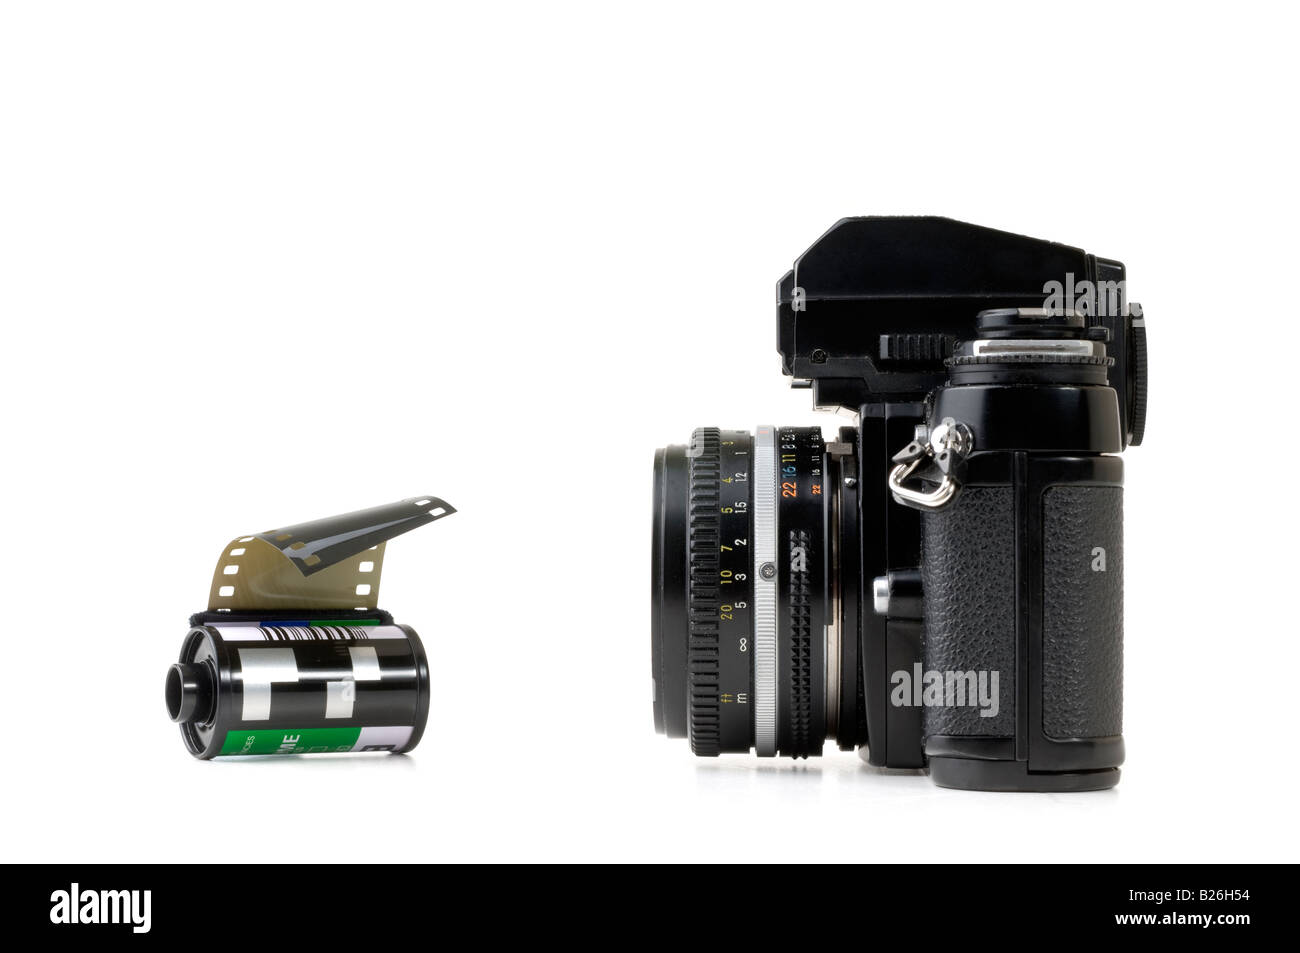 35mm Film-Kamera und Roll von Dia-film Stockfotografie - Alamy